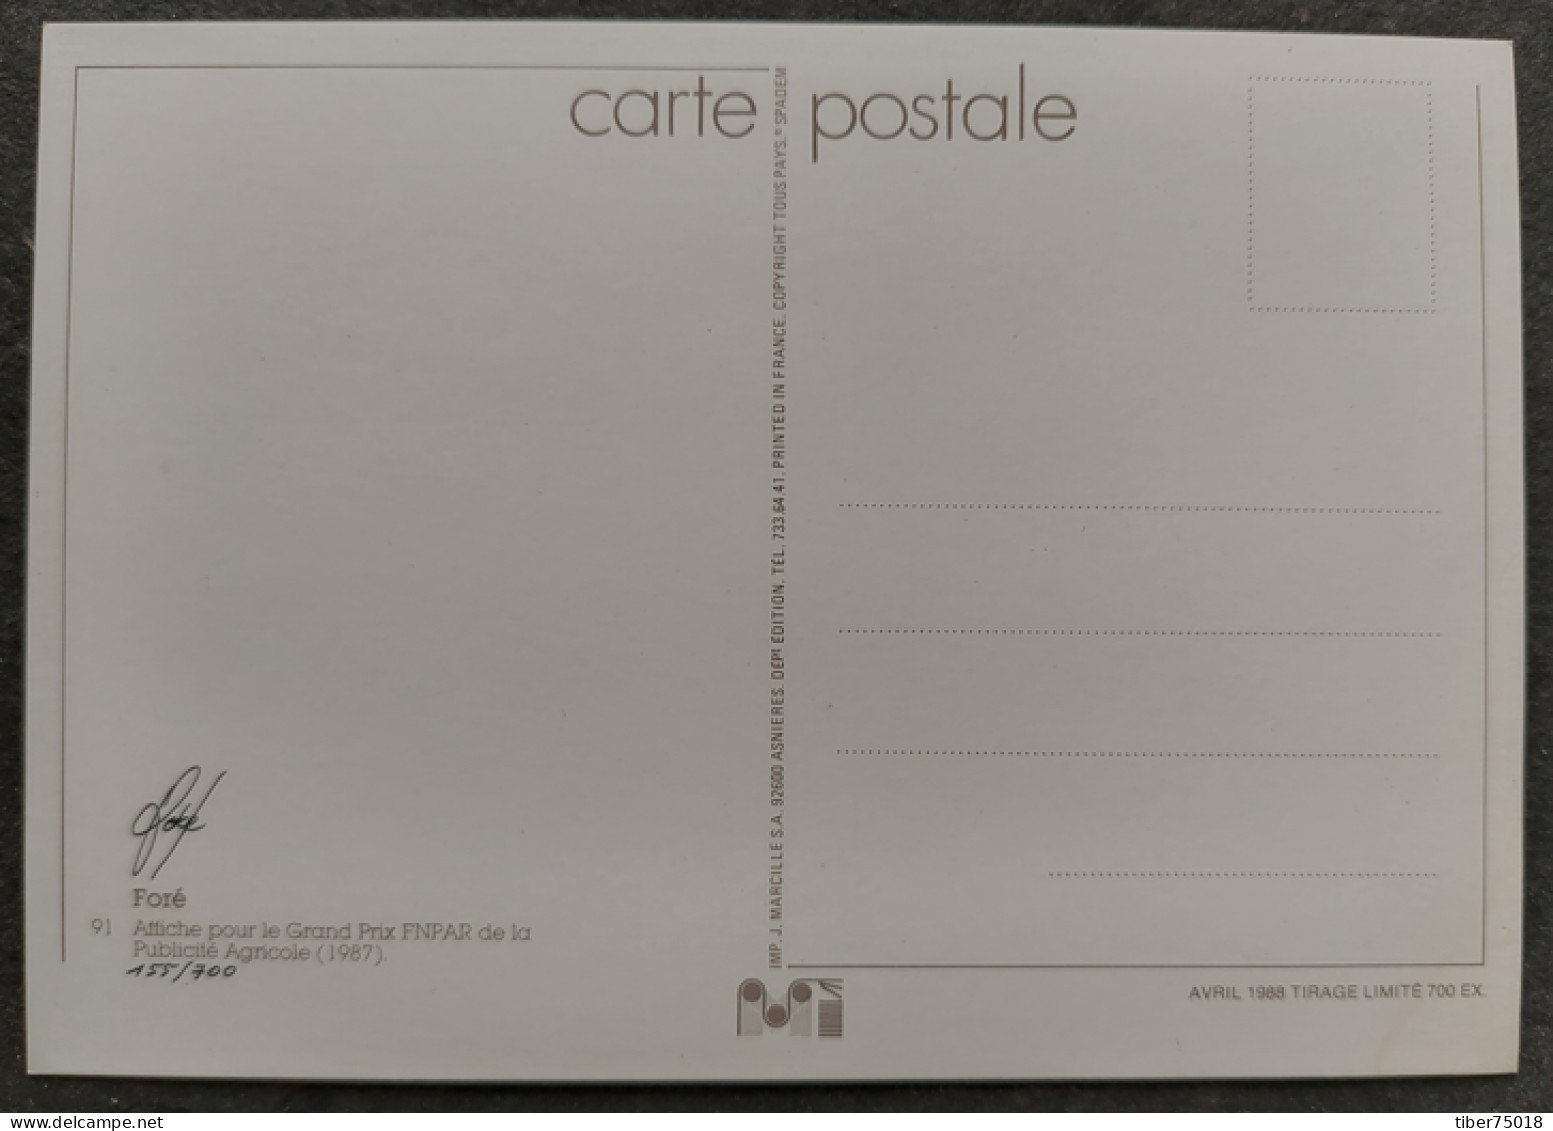 Carte Postale - Affiche Pour Le Grand Prix FNPAR De La Publicité Agricole (1987) Illustration : Foré (signature Au Dos) - Fore